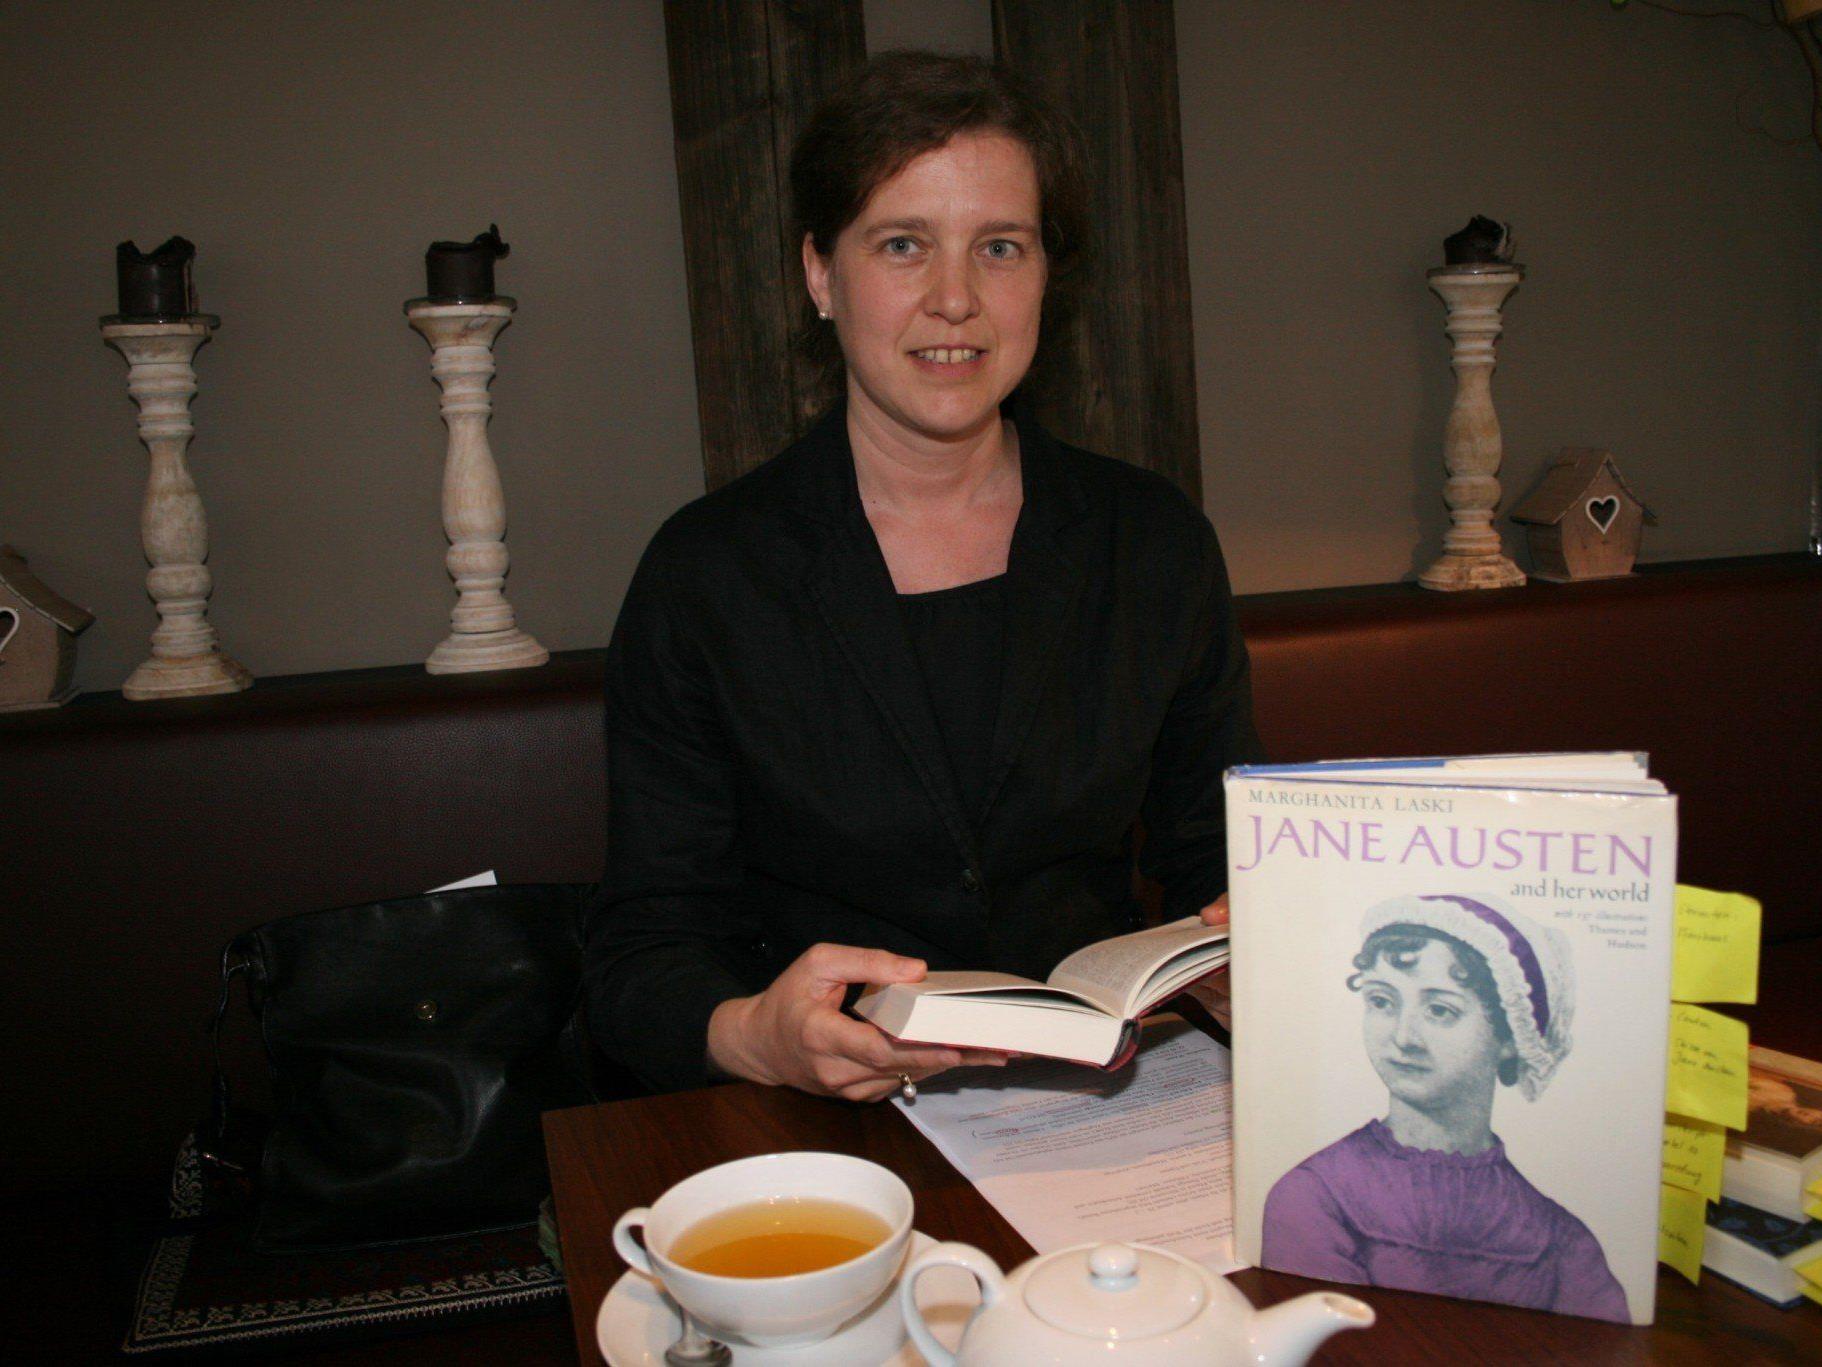 Anglistin Susanna Wergles stellt die englische Schriftstellerin Jane Austen vor.